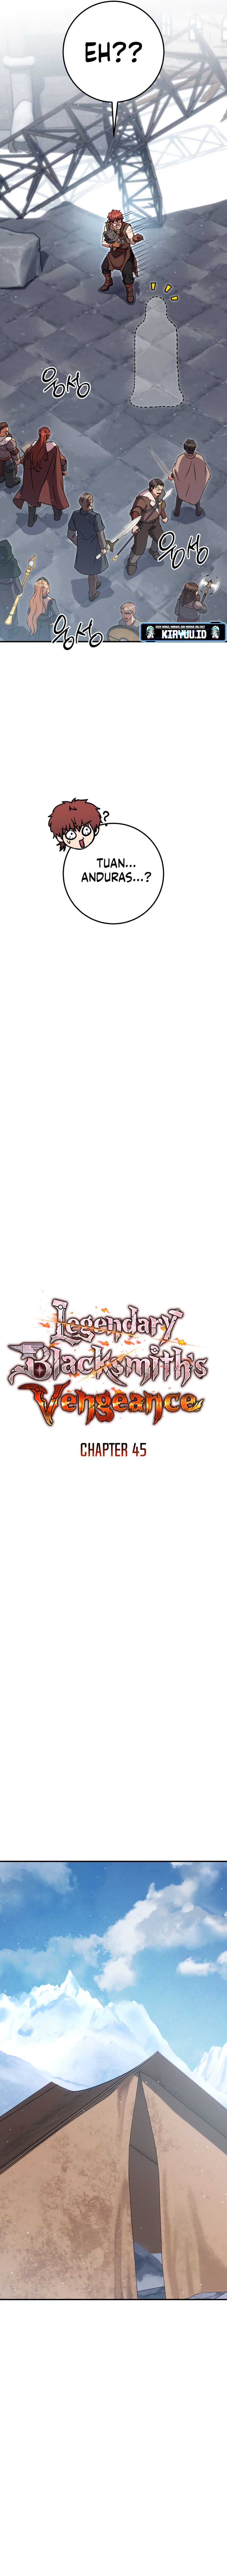 Legendary Blacksmith’s Vengeance Chapter 45